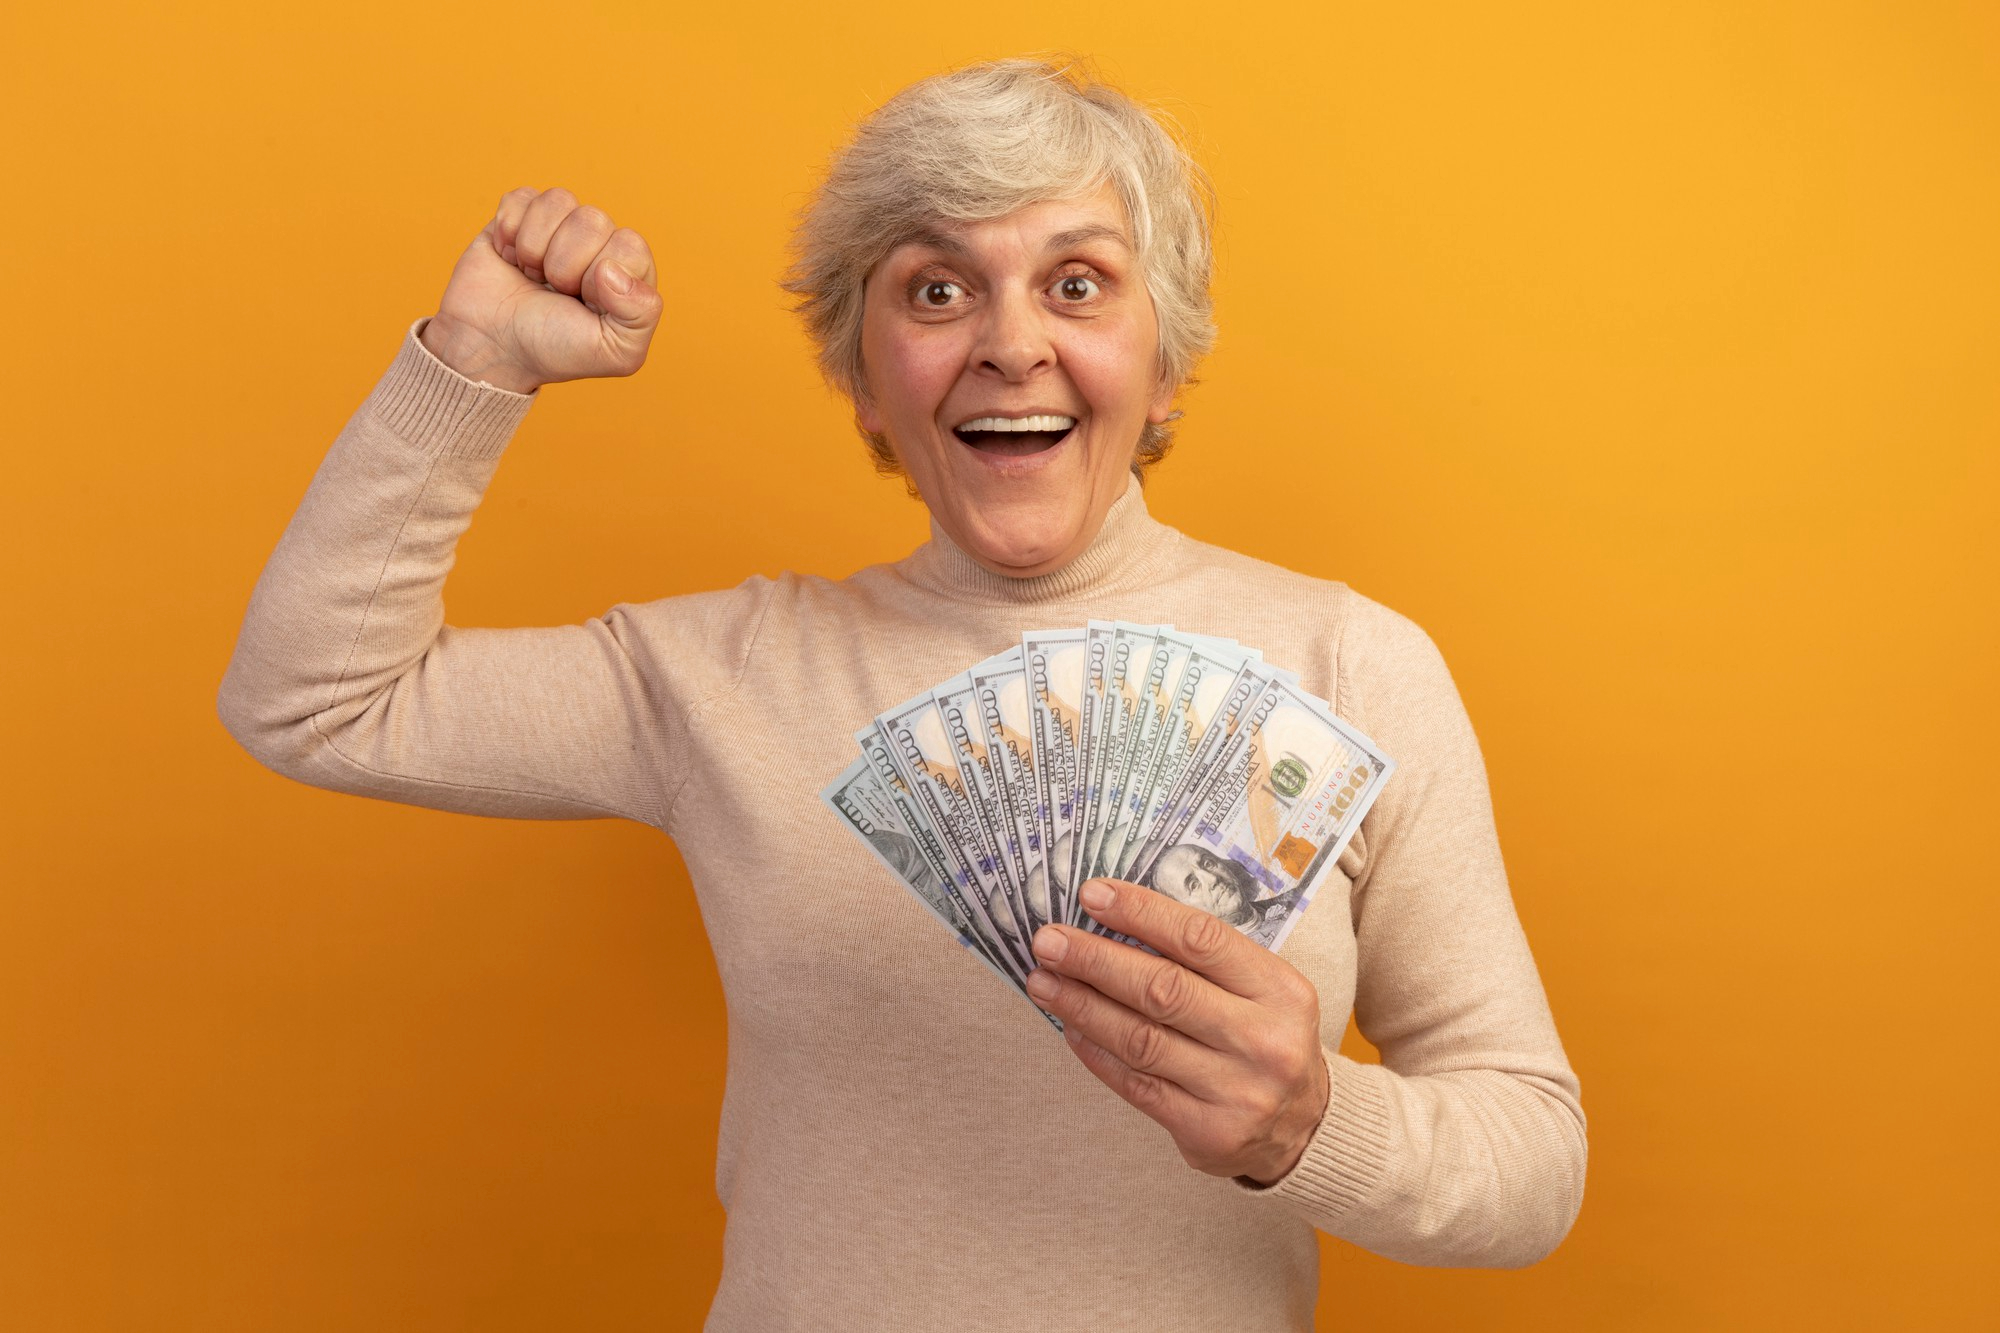 Eine Frau mittleren Alters feiert, während sie Geld in einer Hand hält | Quelle: Freepik